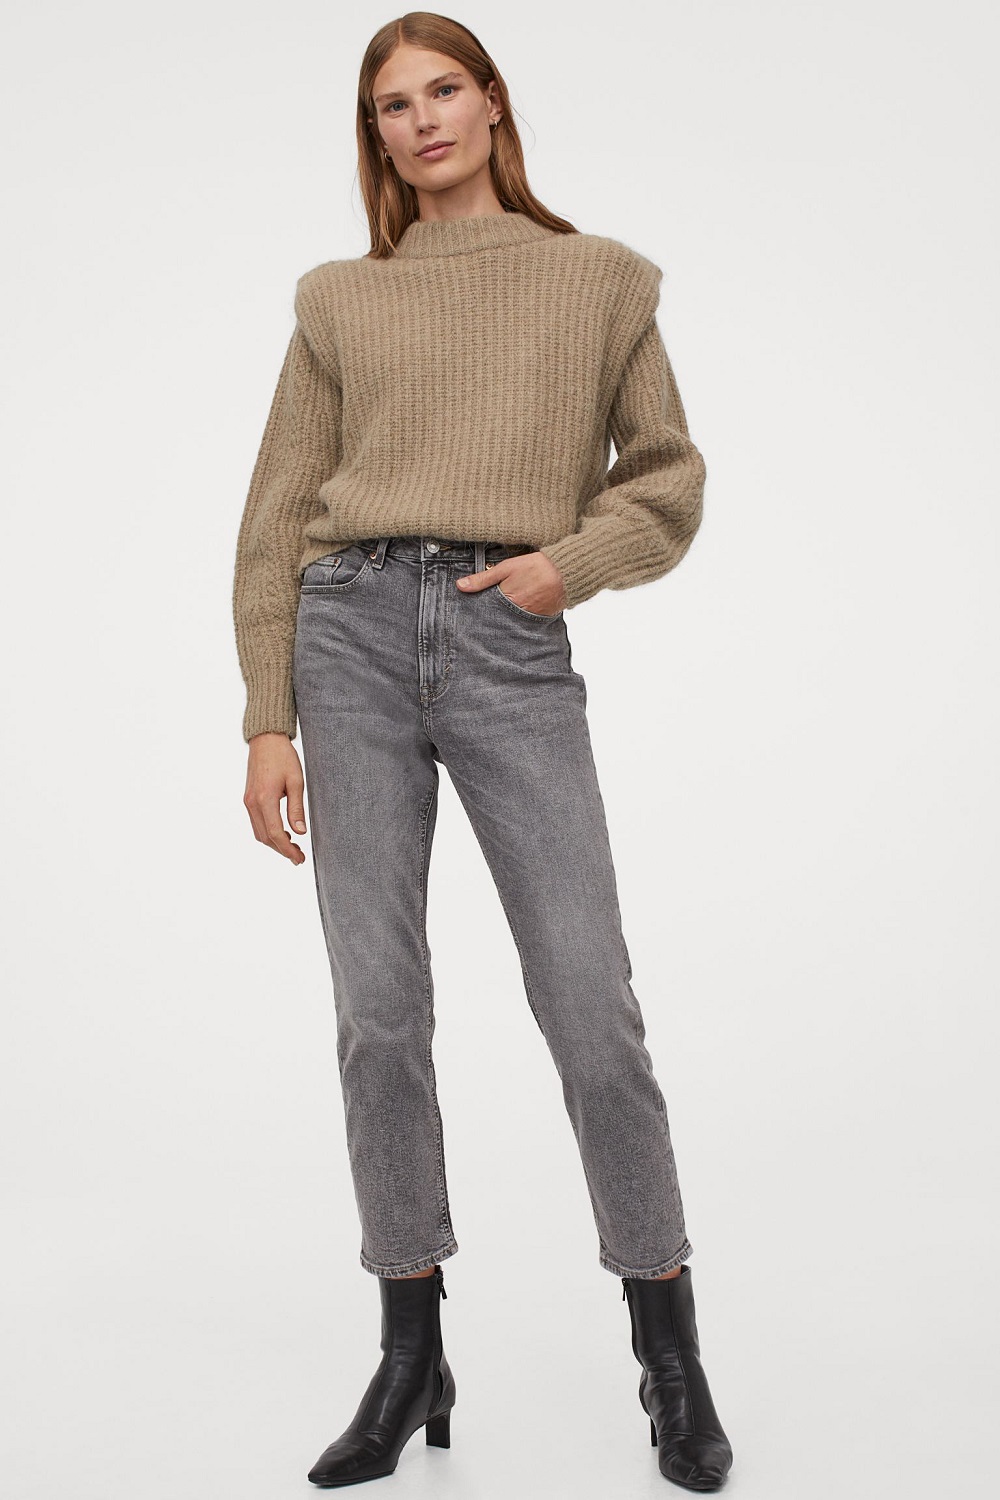 H&M skinny traperice jesen zima 2020.